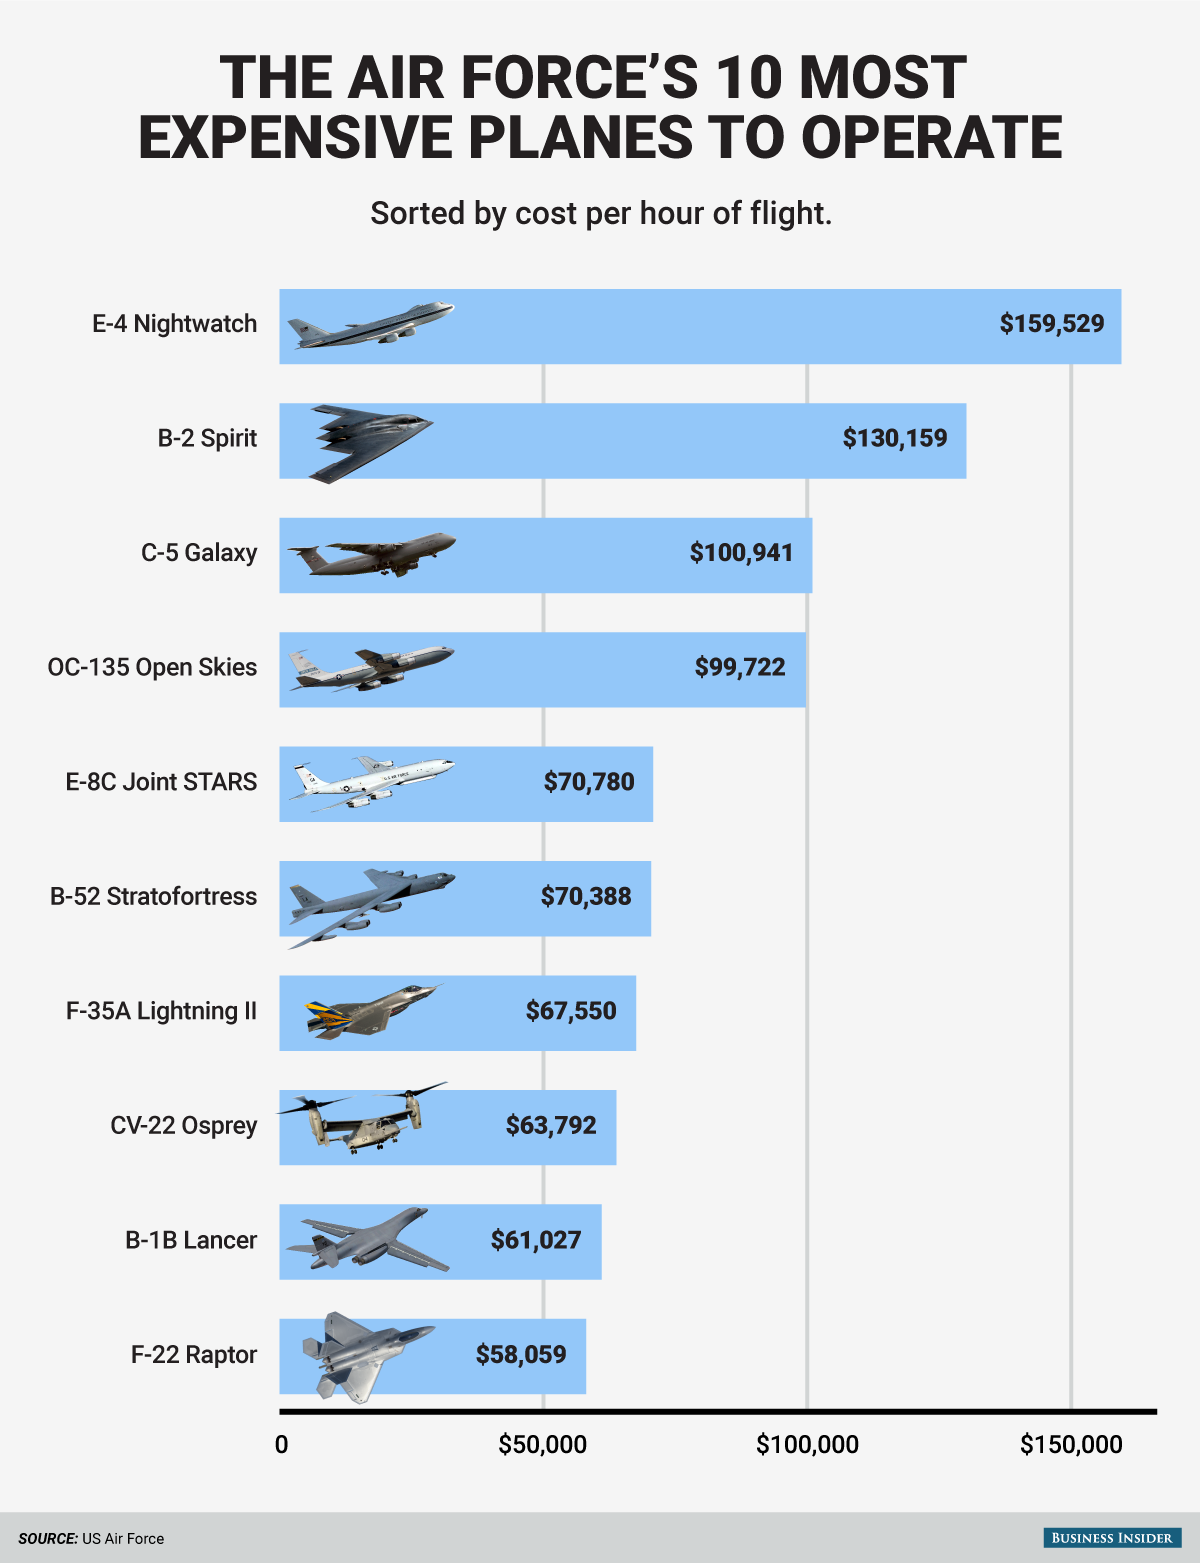 USAF: Os aviões mais caros de operar